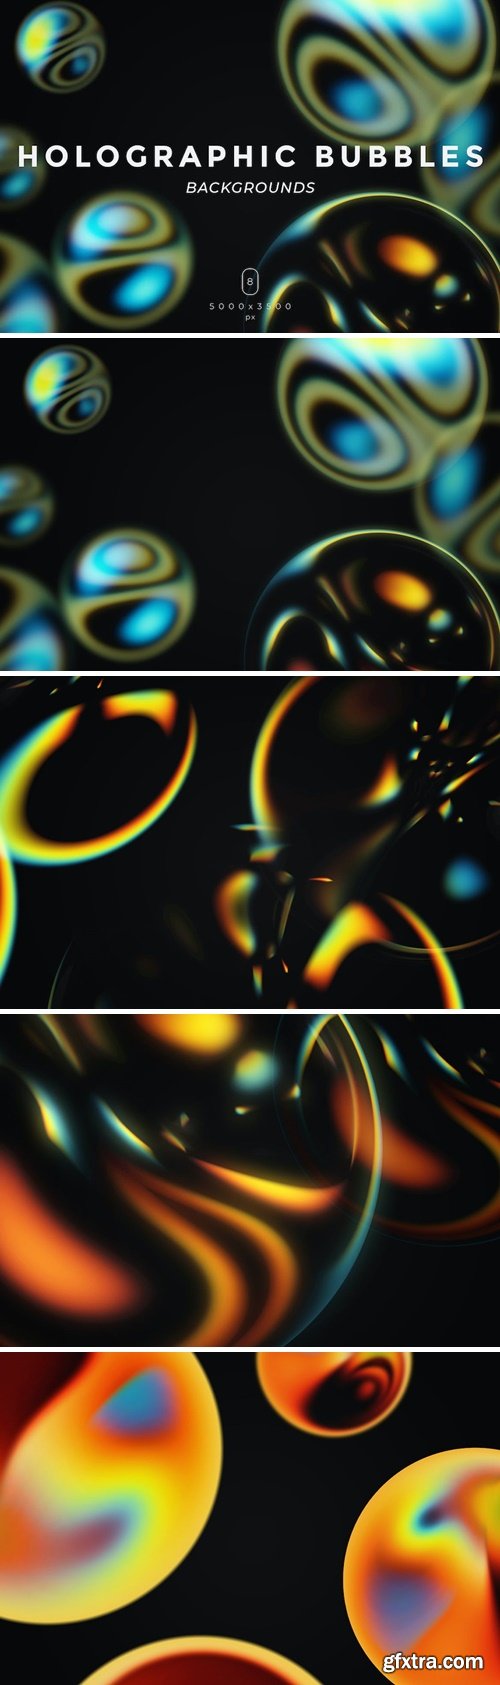 Holographic Bubbles Backgrounds 5P92UHC